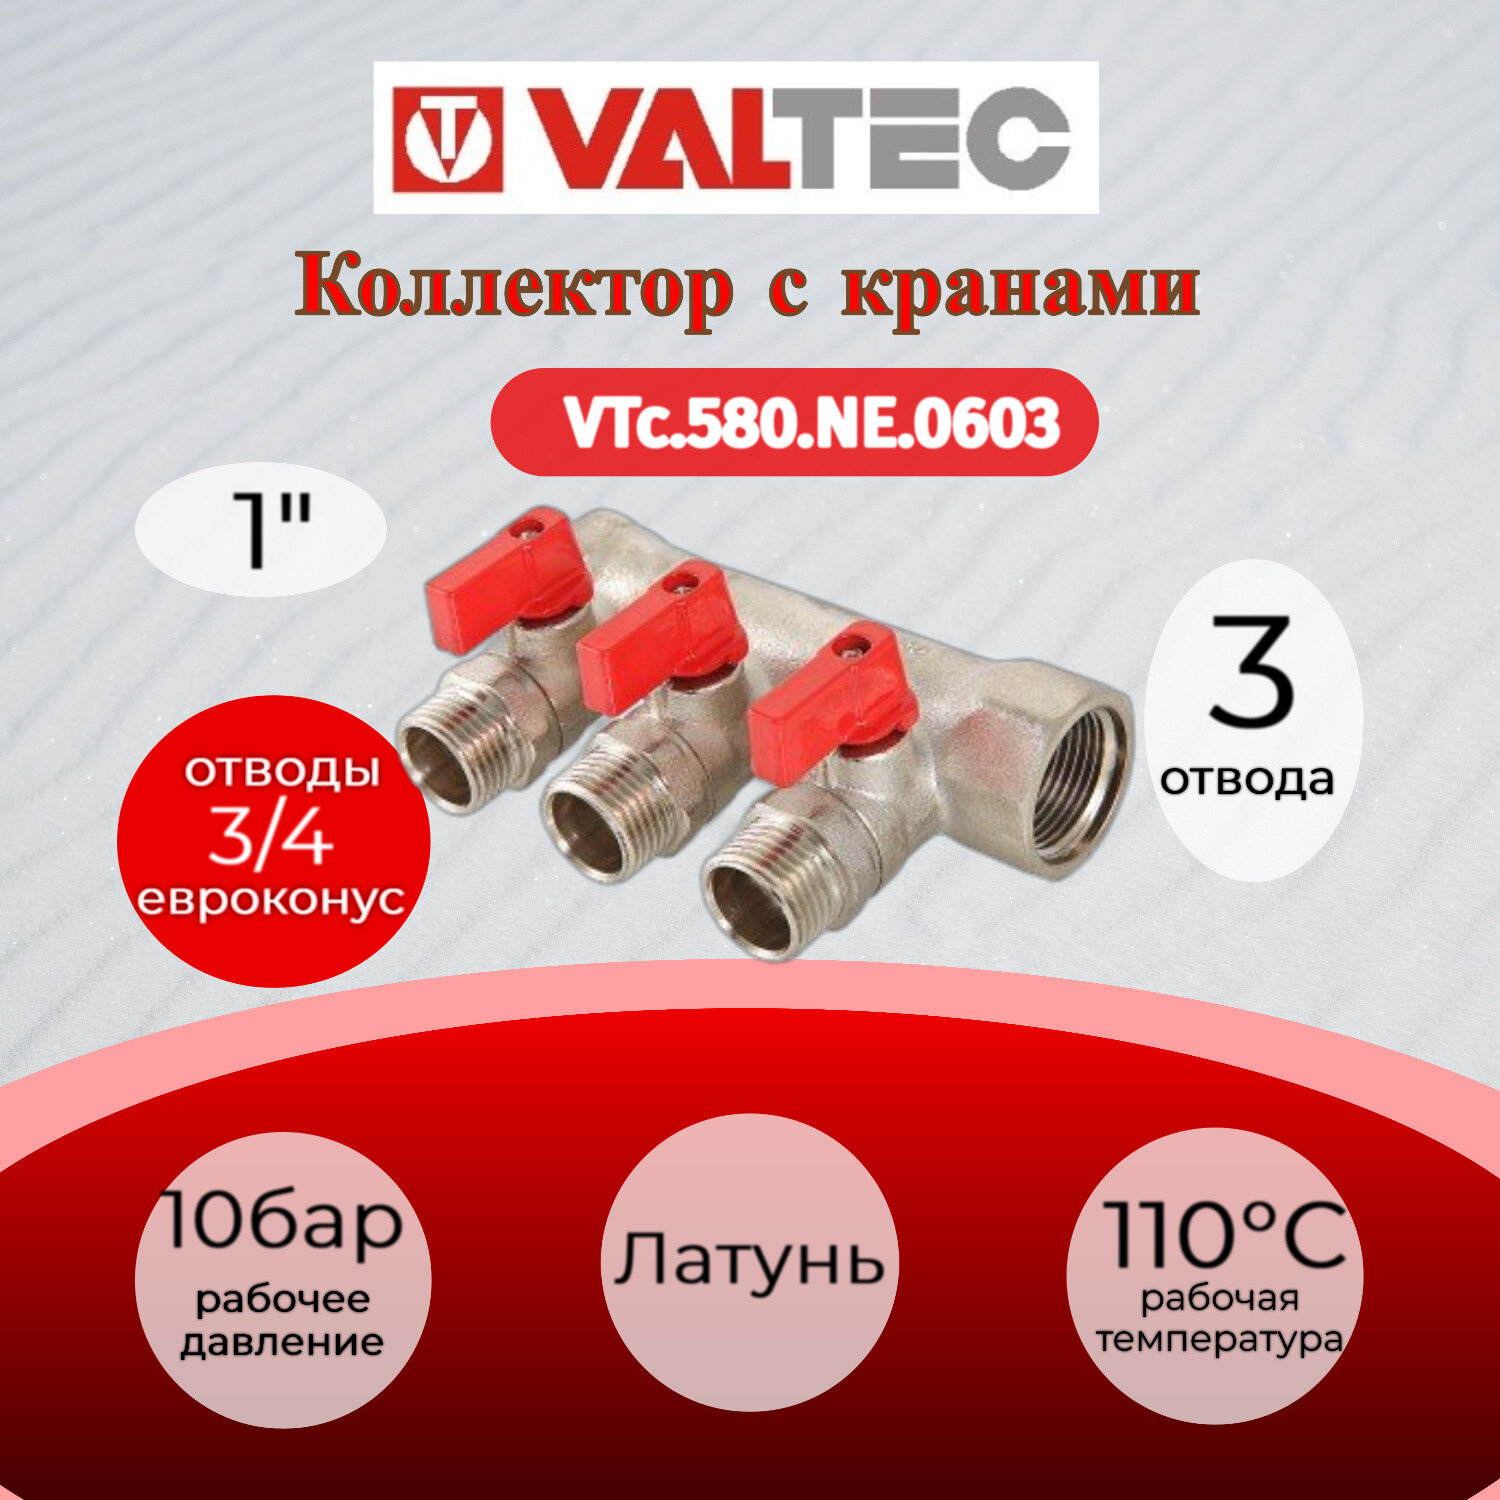 Коллектор с отсекающими кранами VALTEC, 1"х3 выхода 3/4" "евроконус" VTc.580. NE.0603